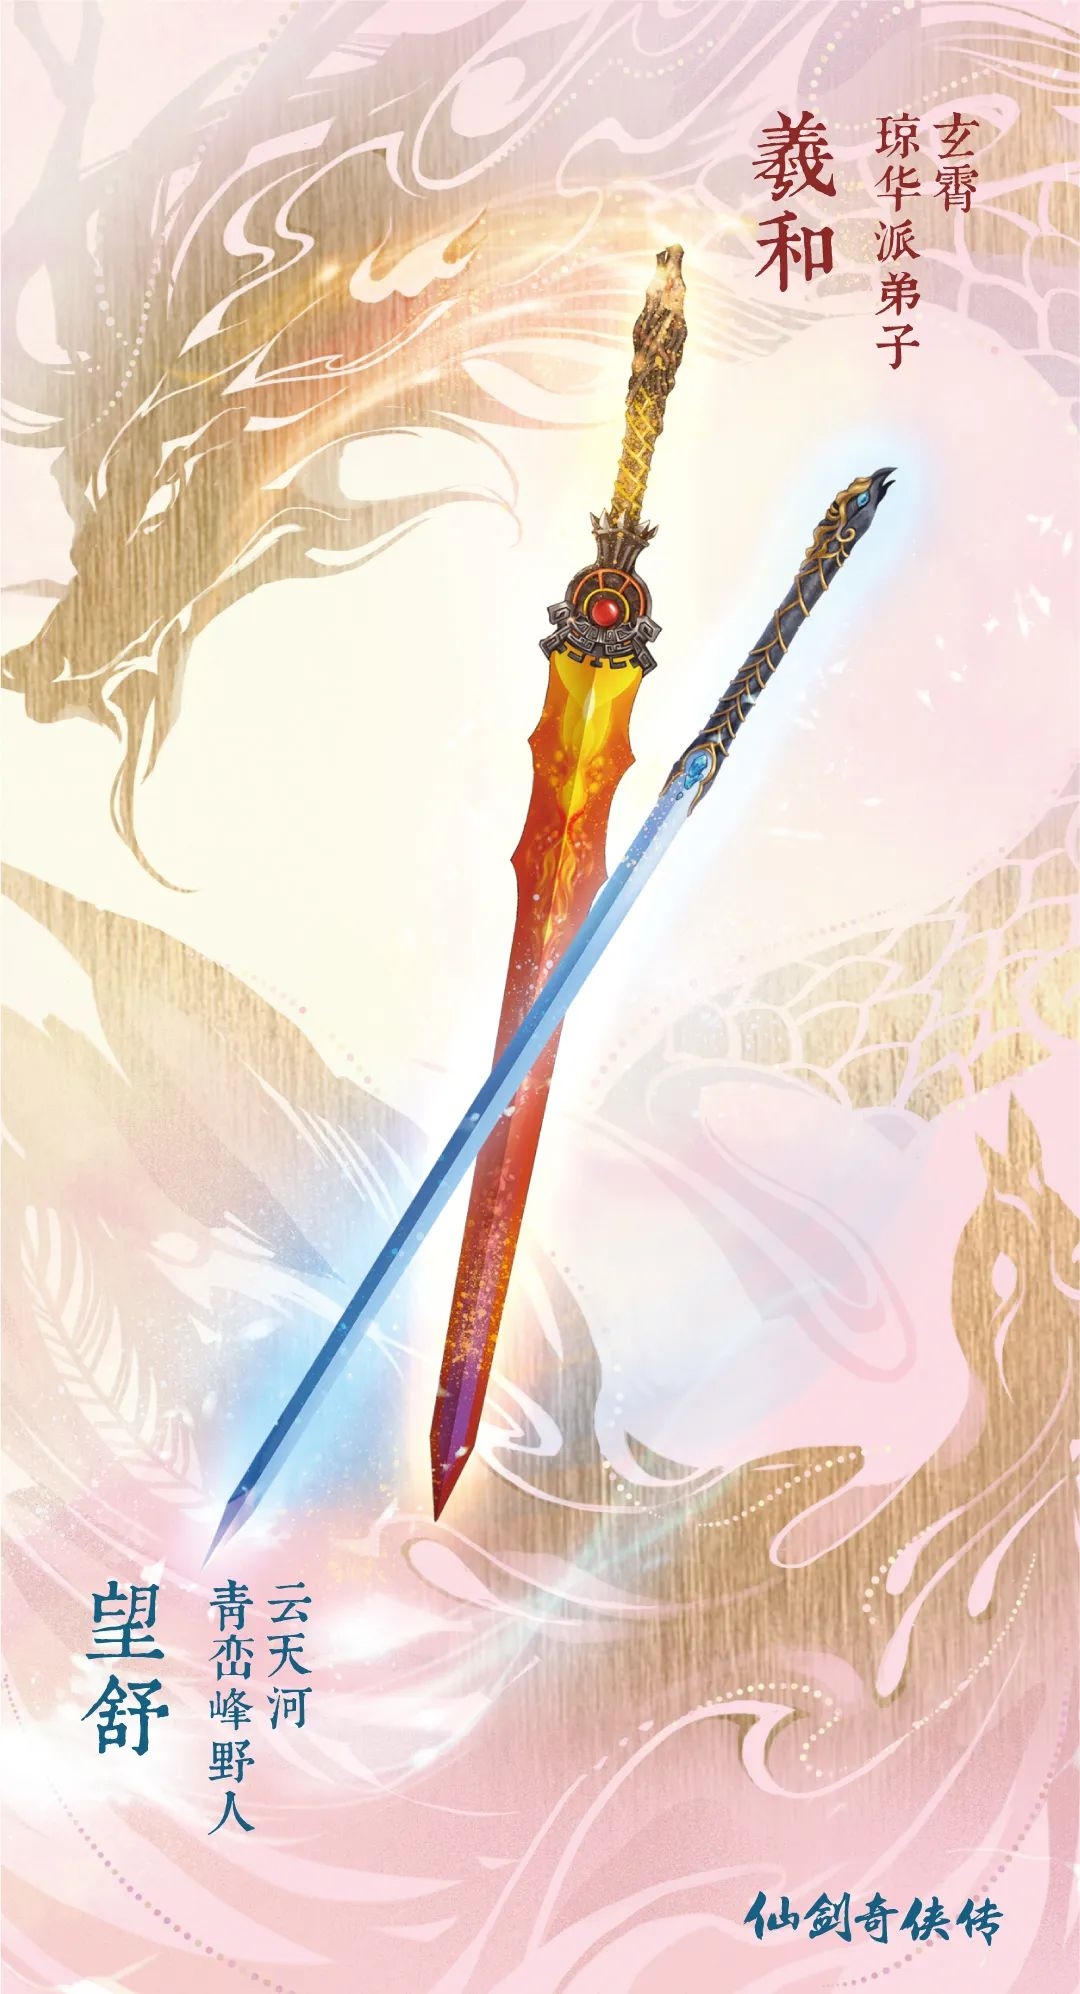 仙剑25周年神秘纪念套装曝光 经典武器魔剑镇妖剑等亮相